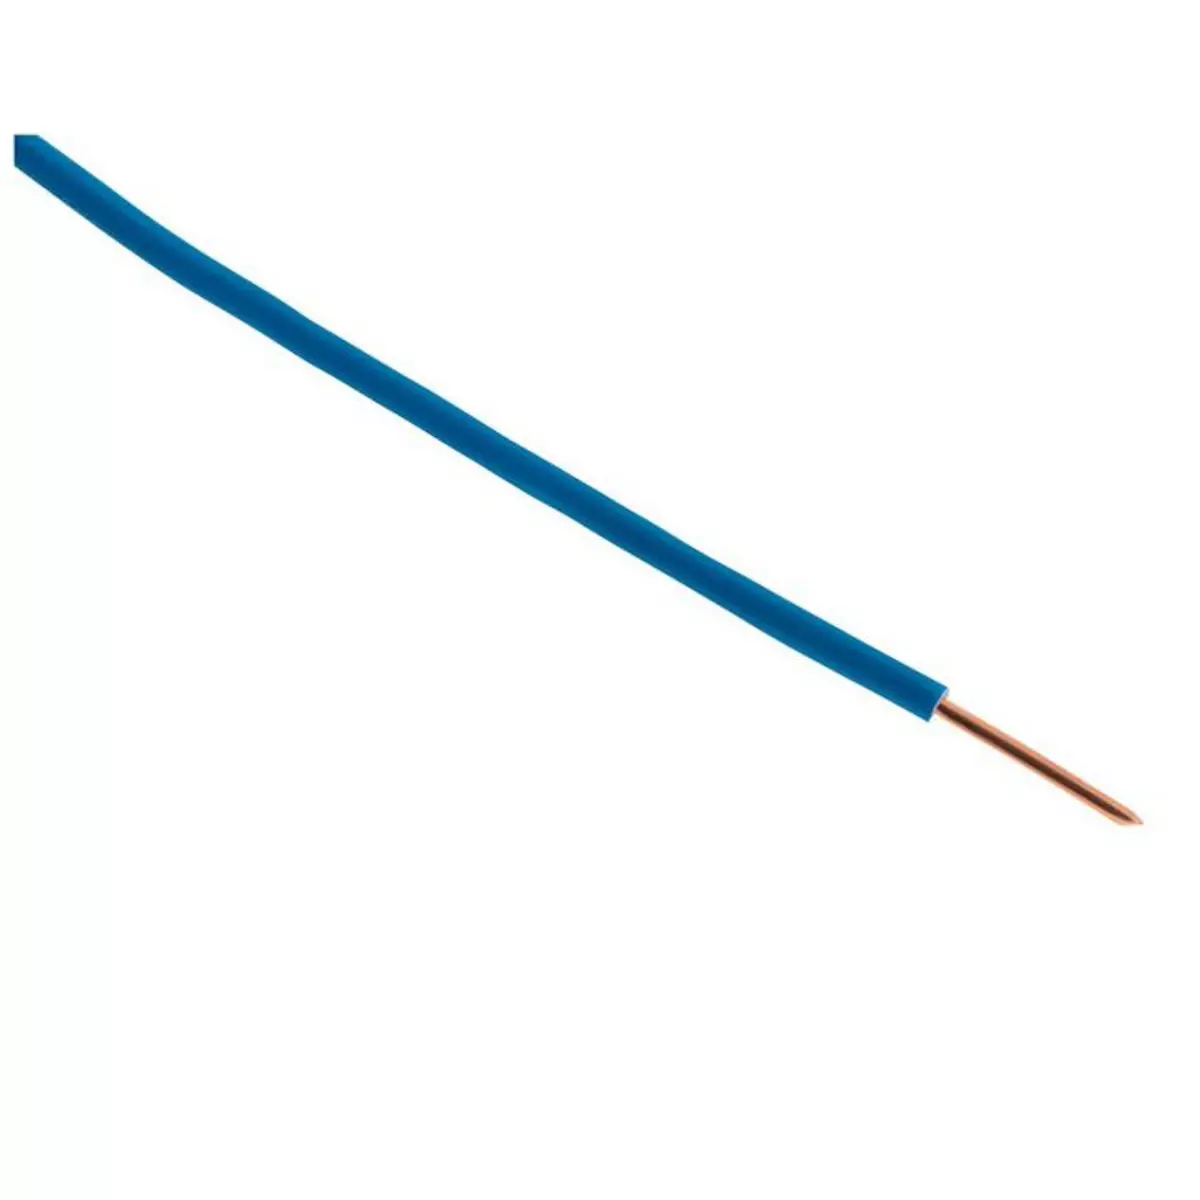 ZENITECH Câble électrique HO7V-U 1,5 mm2 bleu 25 m